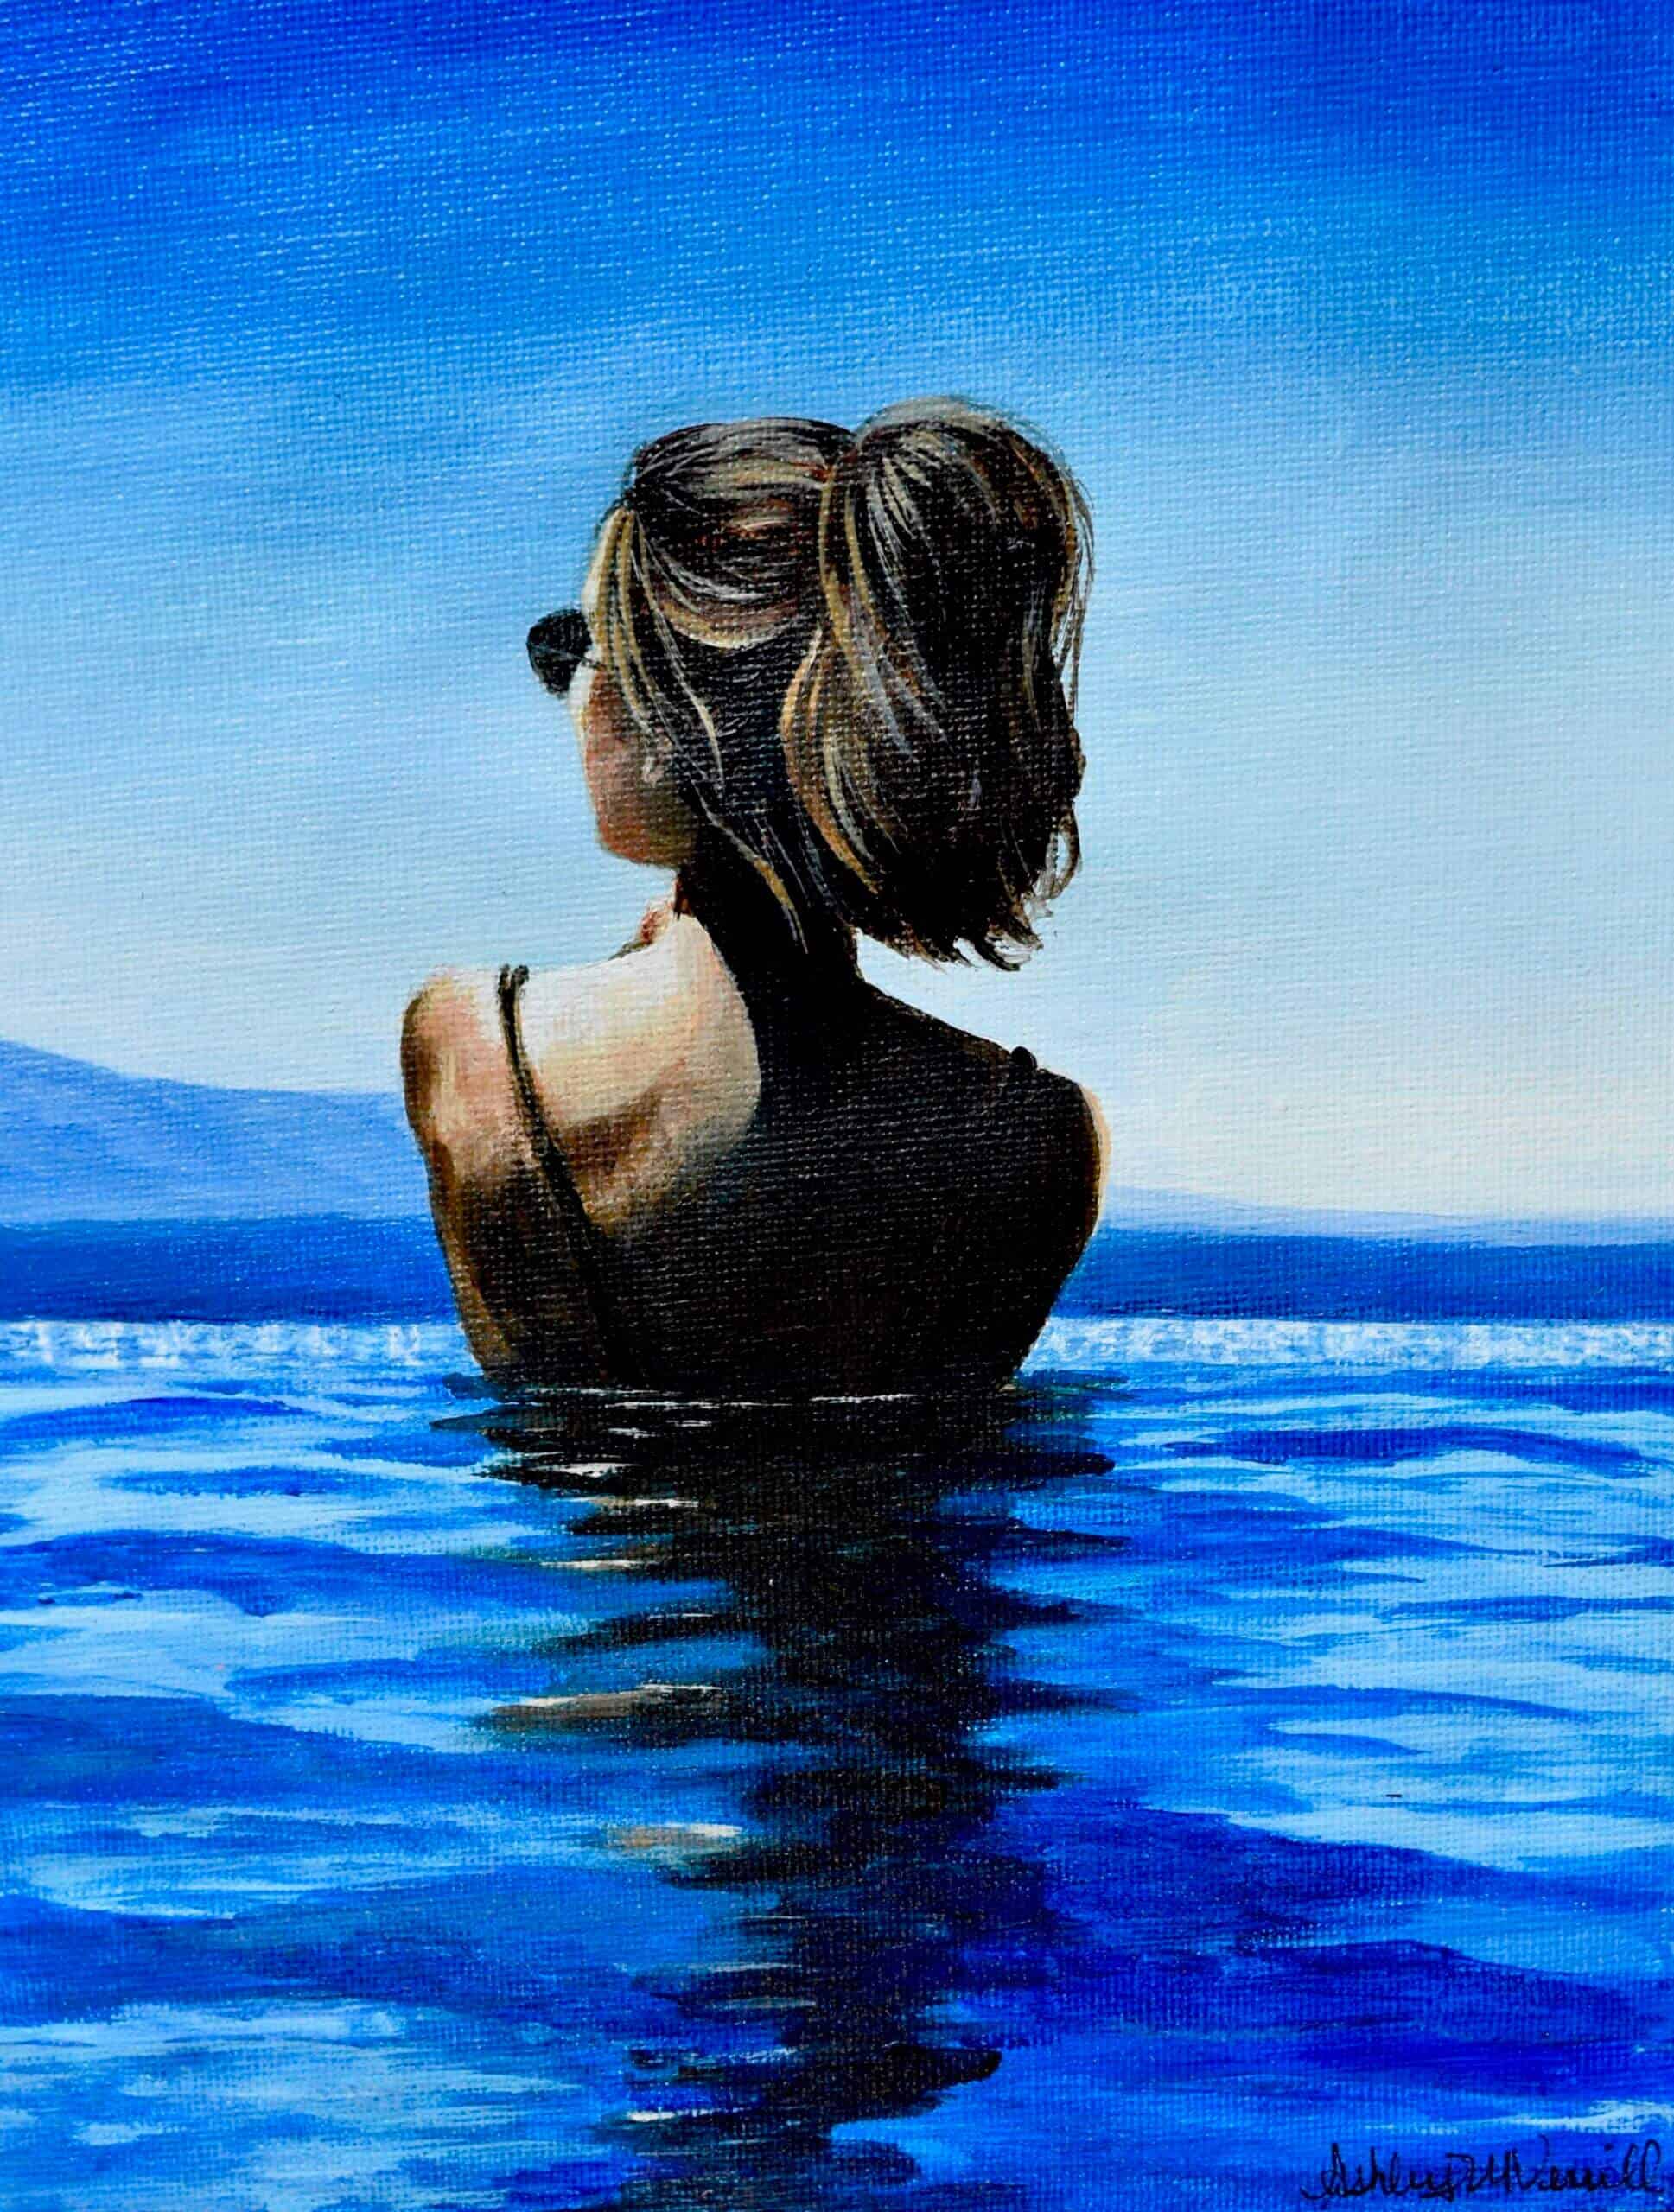 Portrait of Female Figure Body Art Reflecting in Water